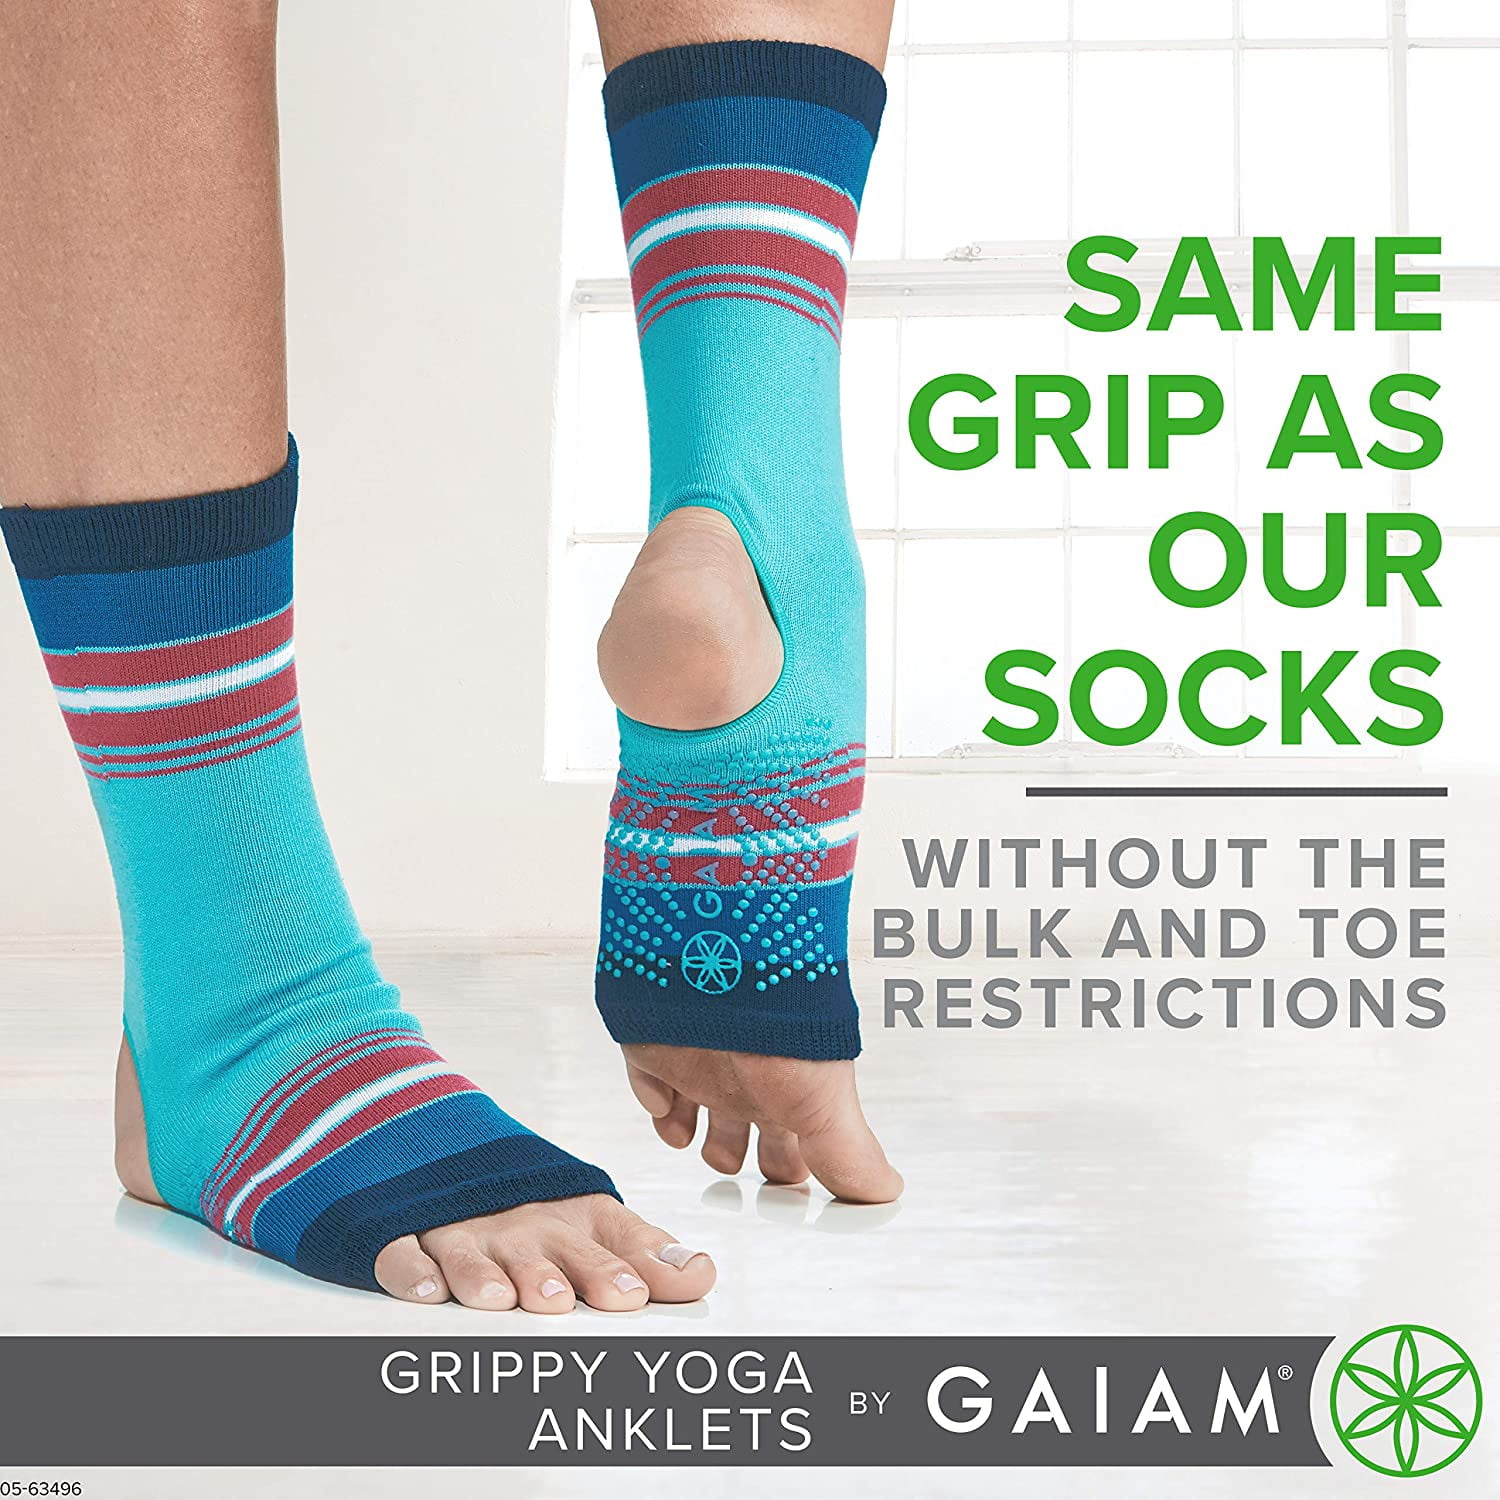 Gaiam Grippy Yoga Anklets Toeless Socks Nonslip Grip for Good Balance 